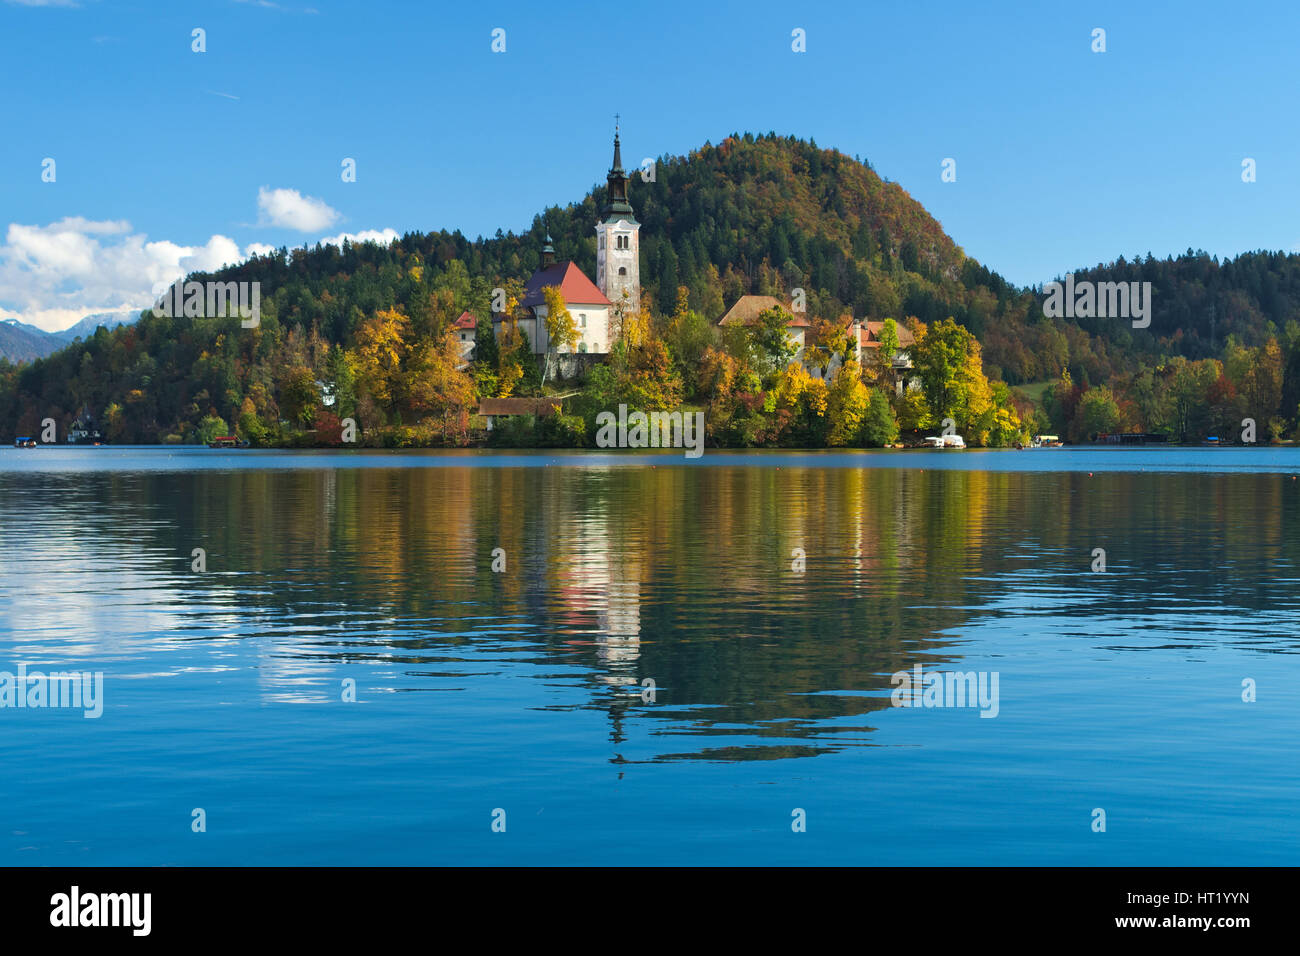 Vue du château et de l'église de l'assomption dans l'île du lac de Bled (Slovénie), Bled jezero Banque D'Images